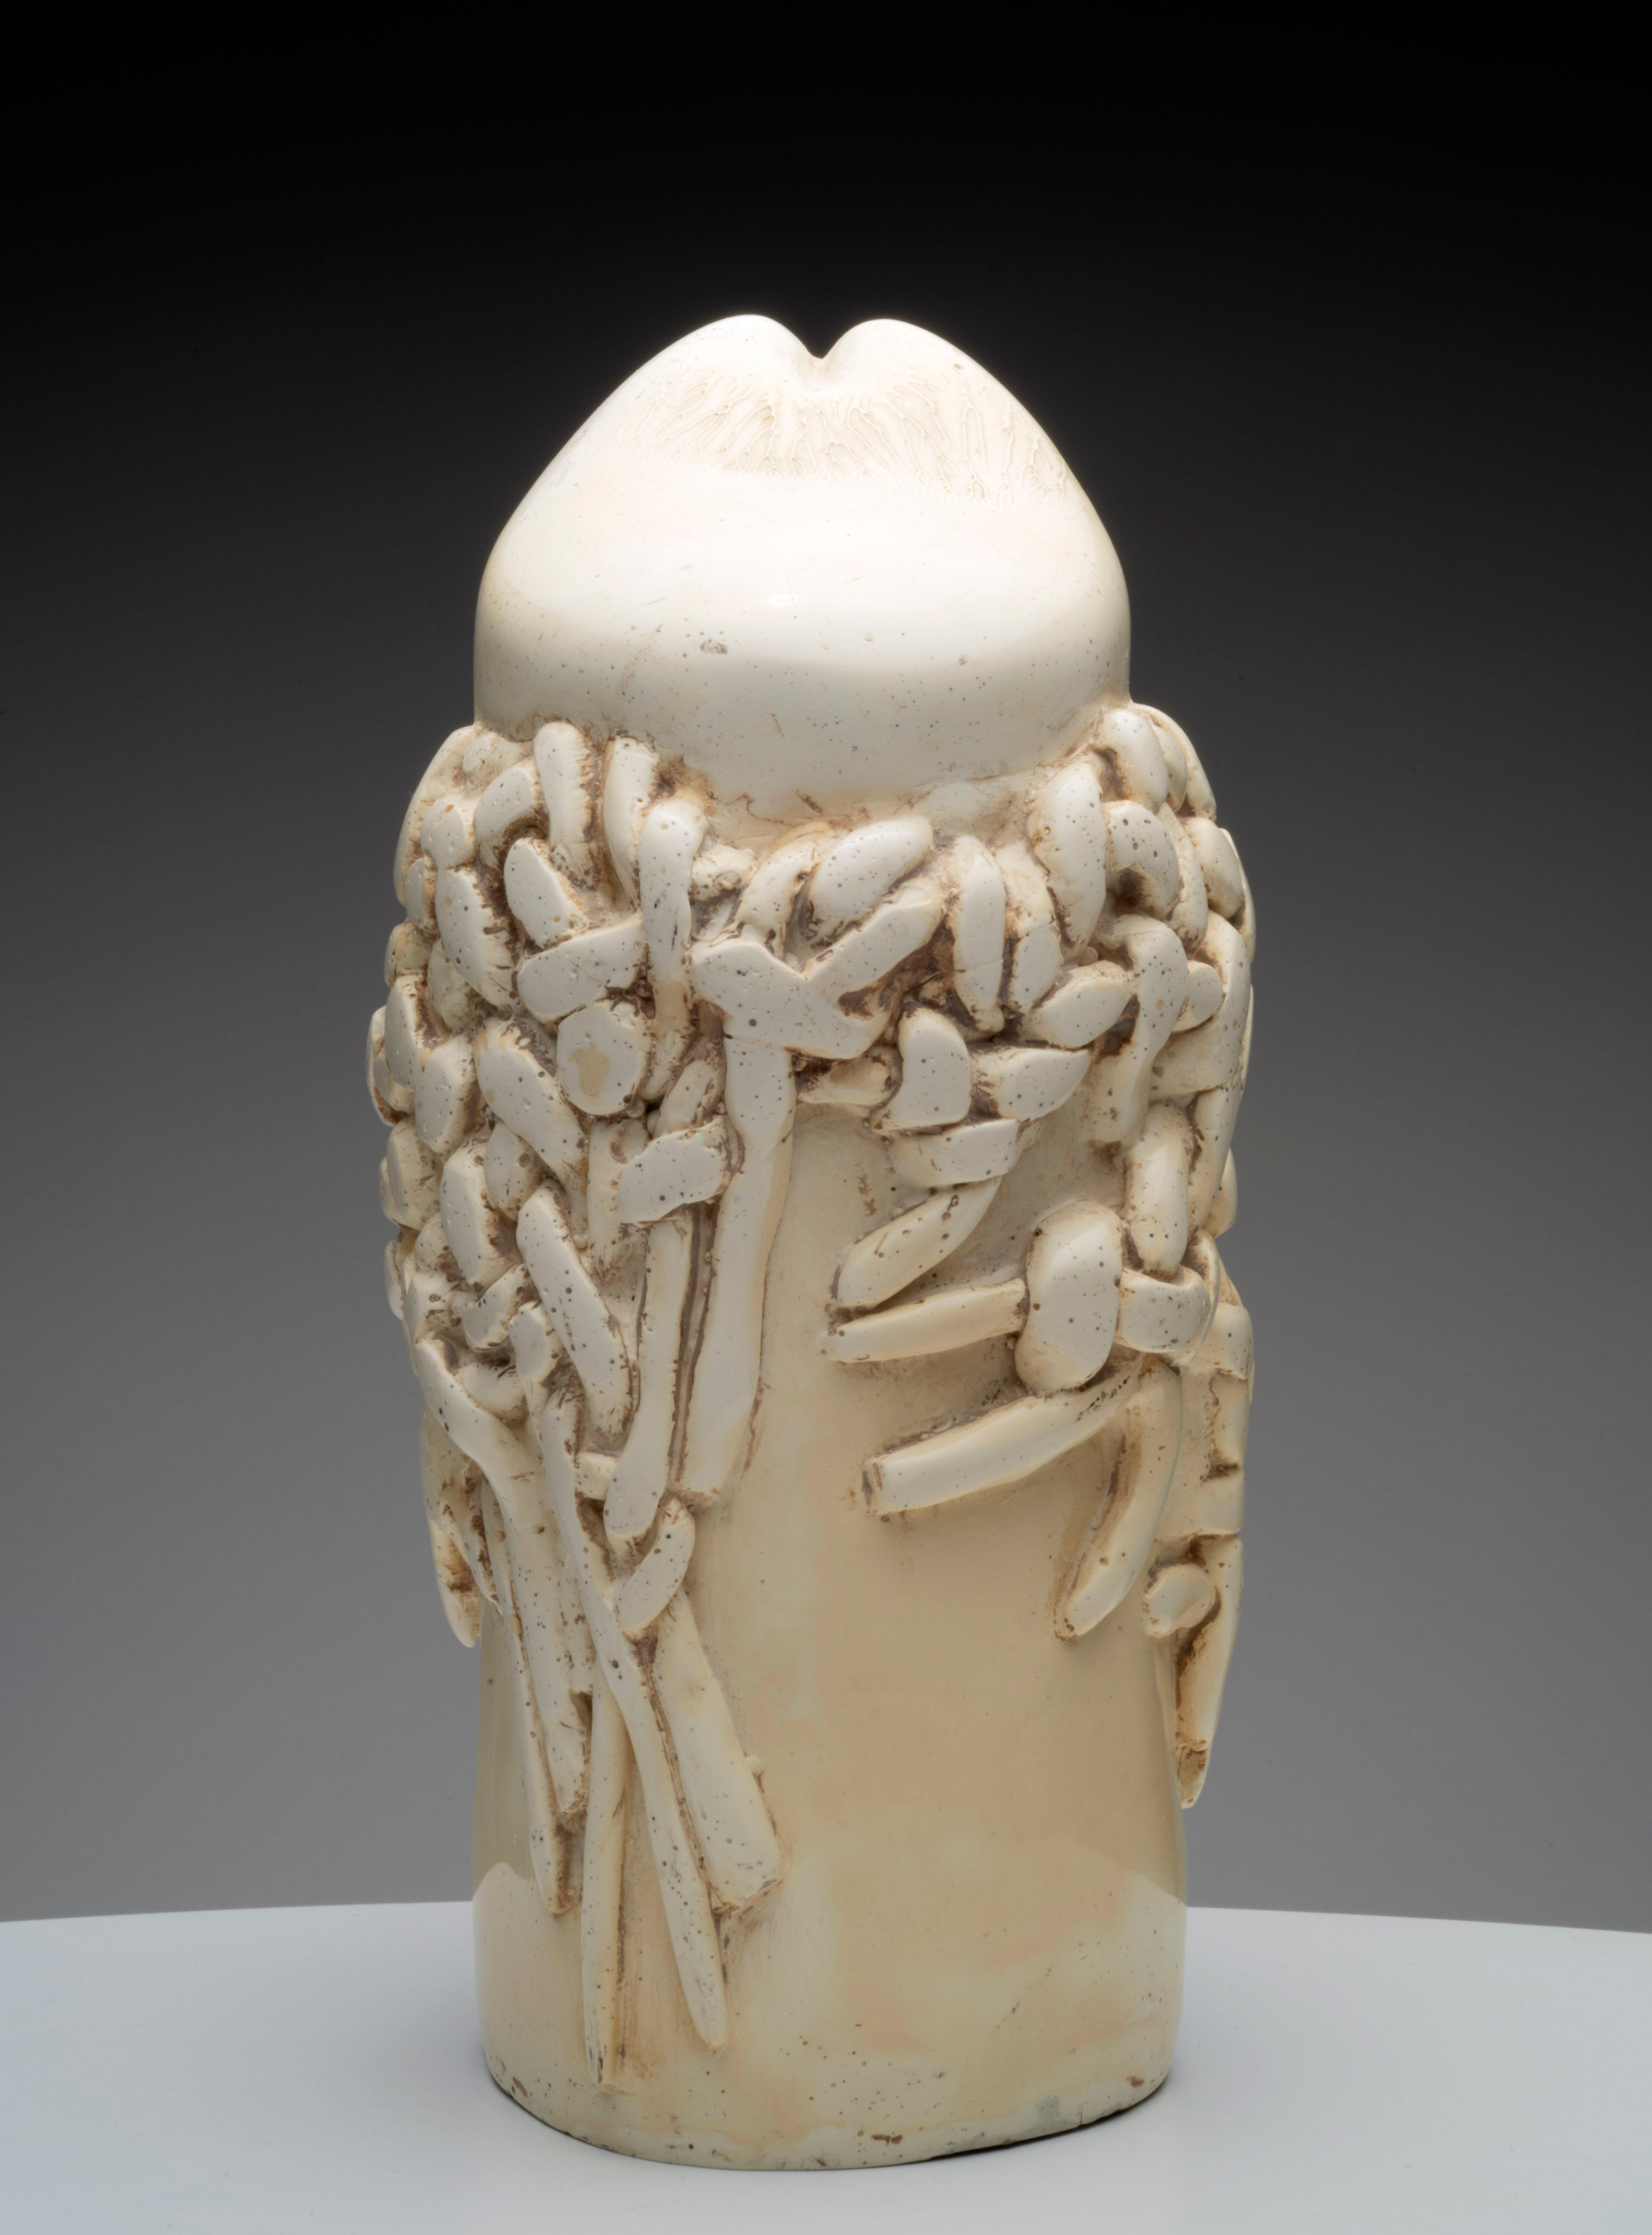 Raúl Valdivieso Abstract Sculpture – Raul Valdivieso Lateinamerikanische erotische Keramik-Skulptur, 1960er Jahre